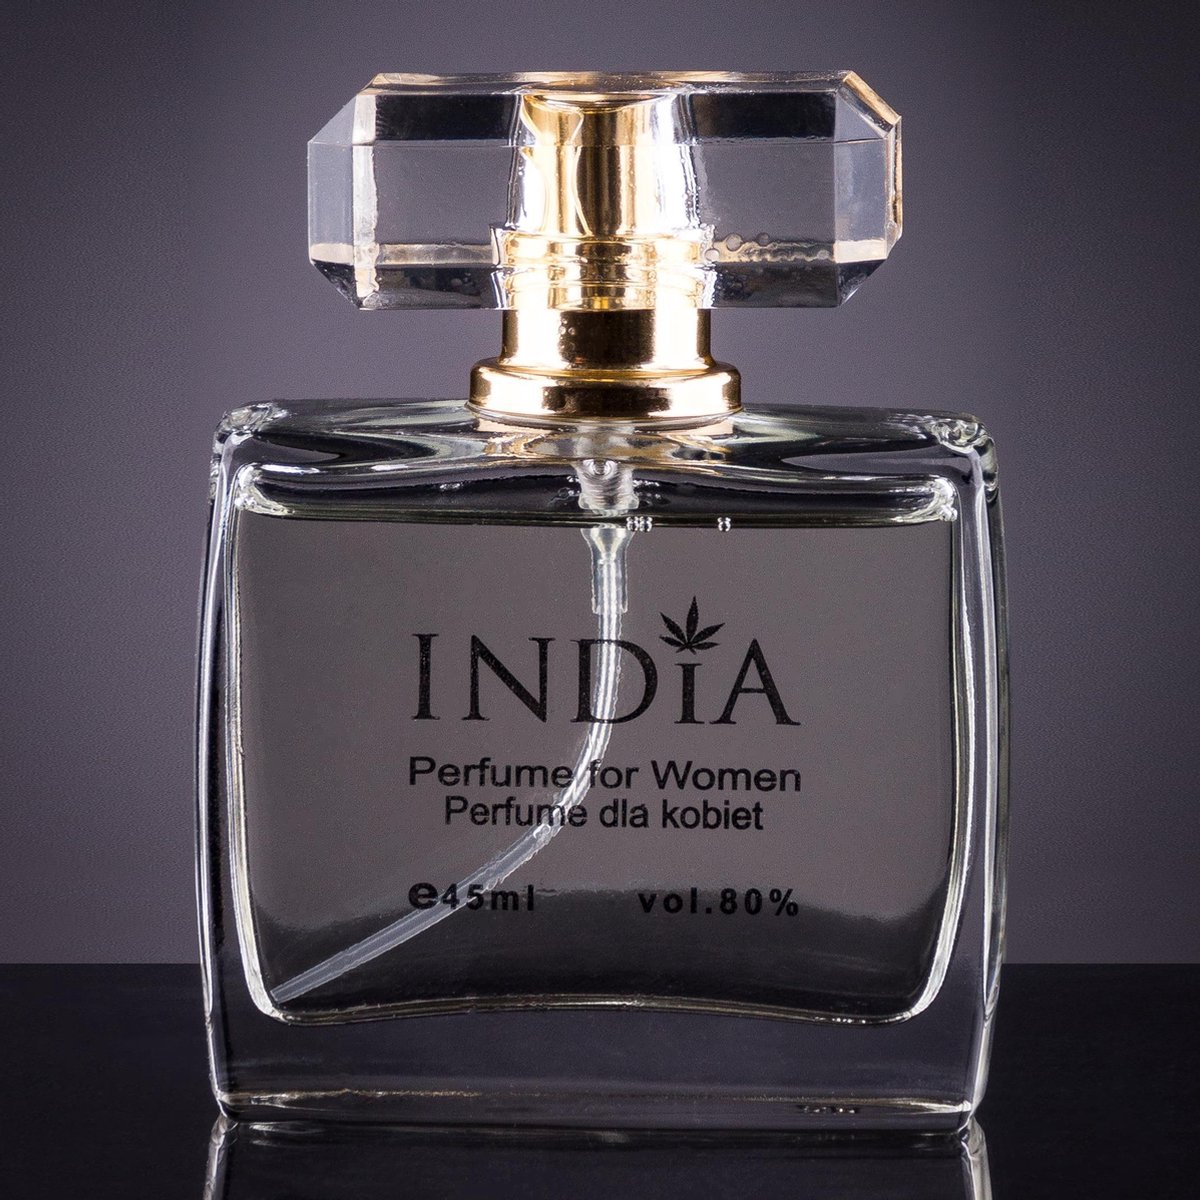 India Cosmetics Damesparfum noot van hennep 45ml